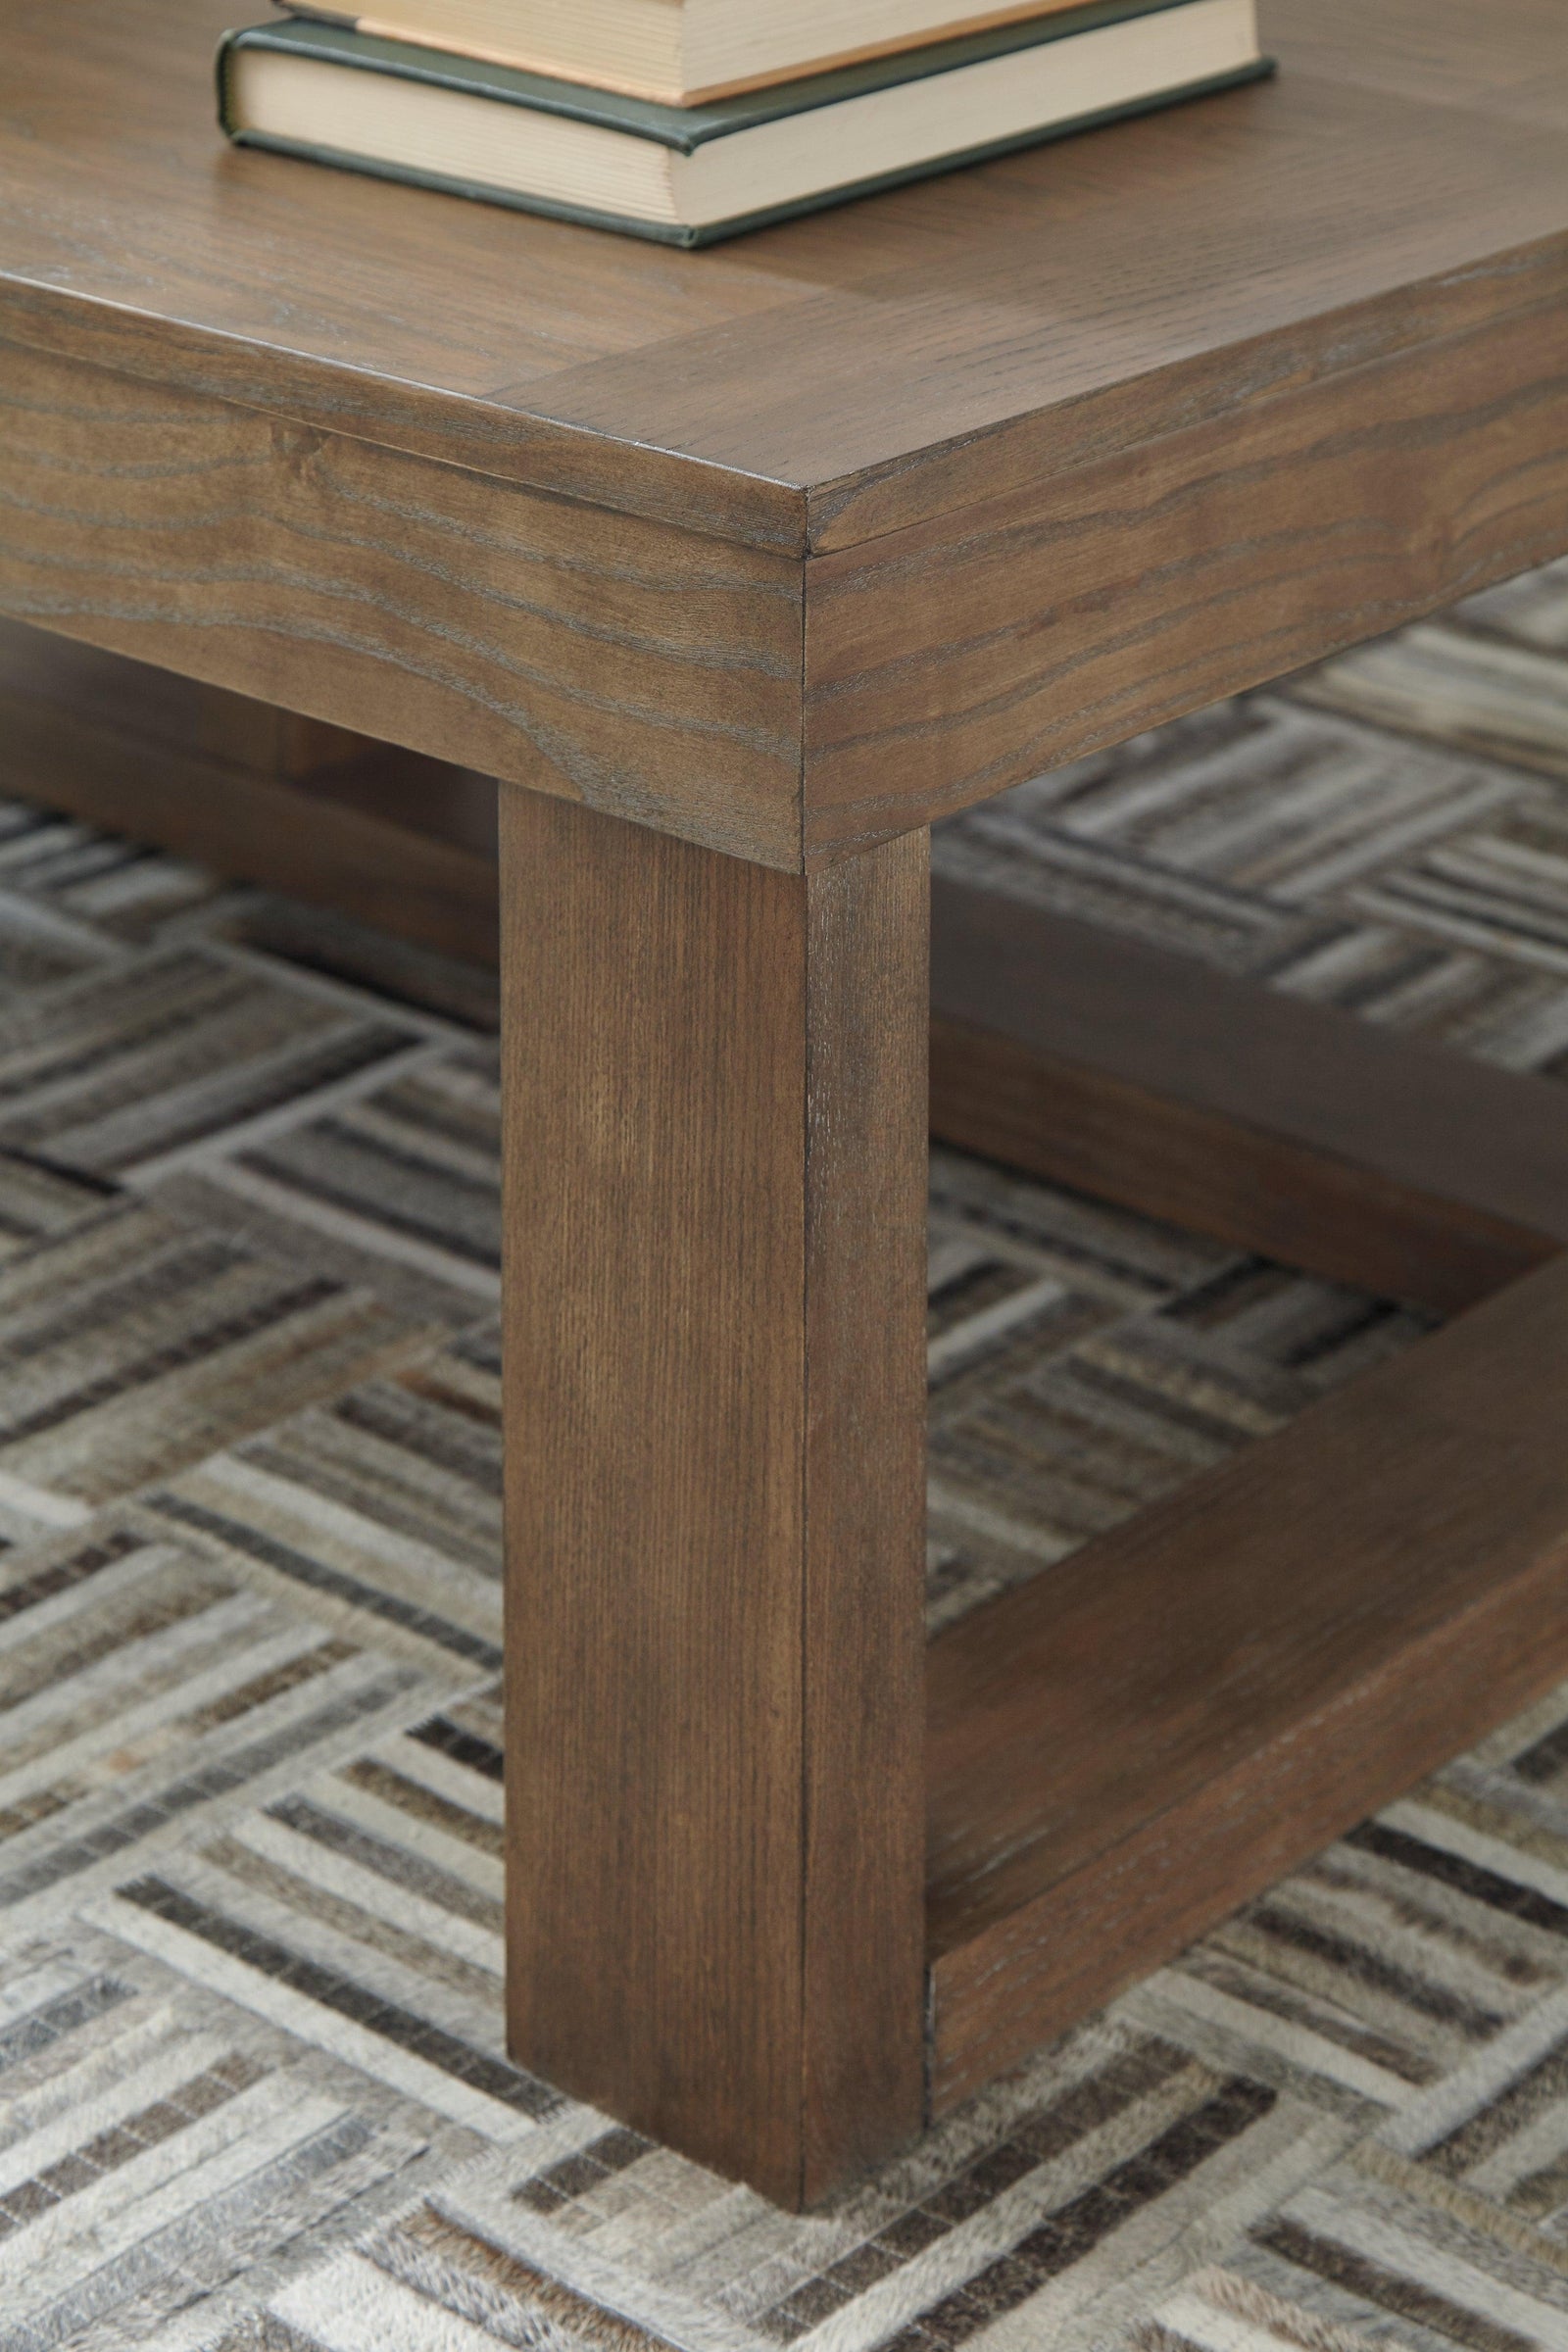 Cariton Gray Coffee Table - Ella Furniture